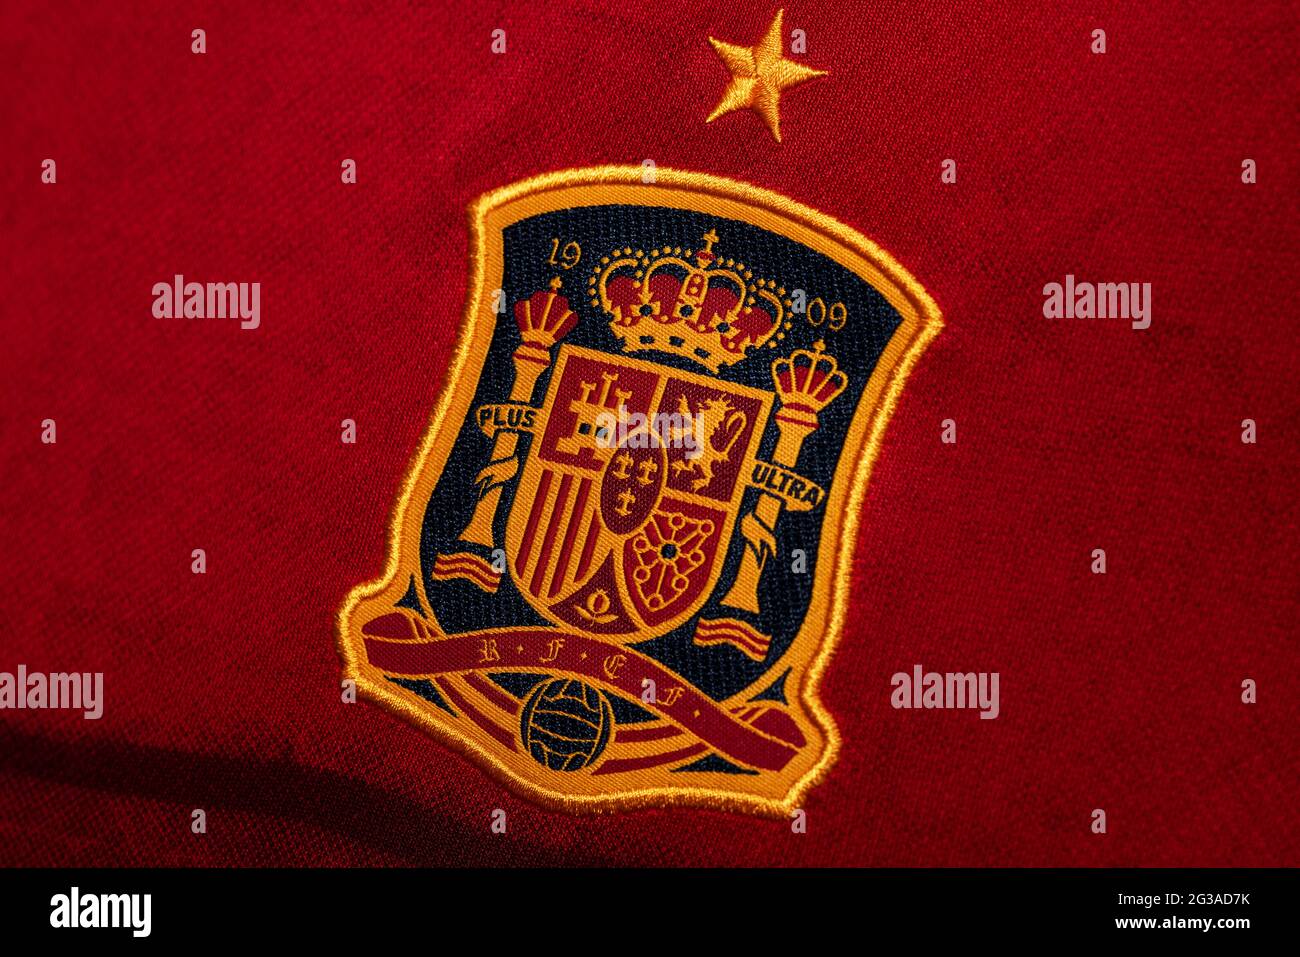 Spagna calcio immagini e fotografie stock ad alta risoluzione - Alamy